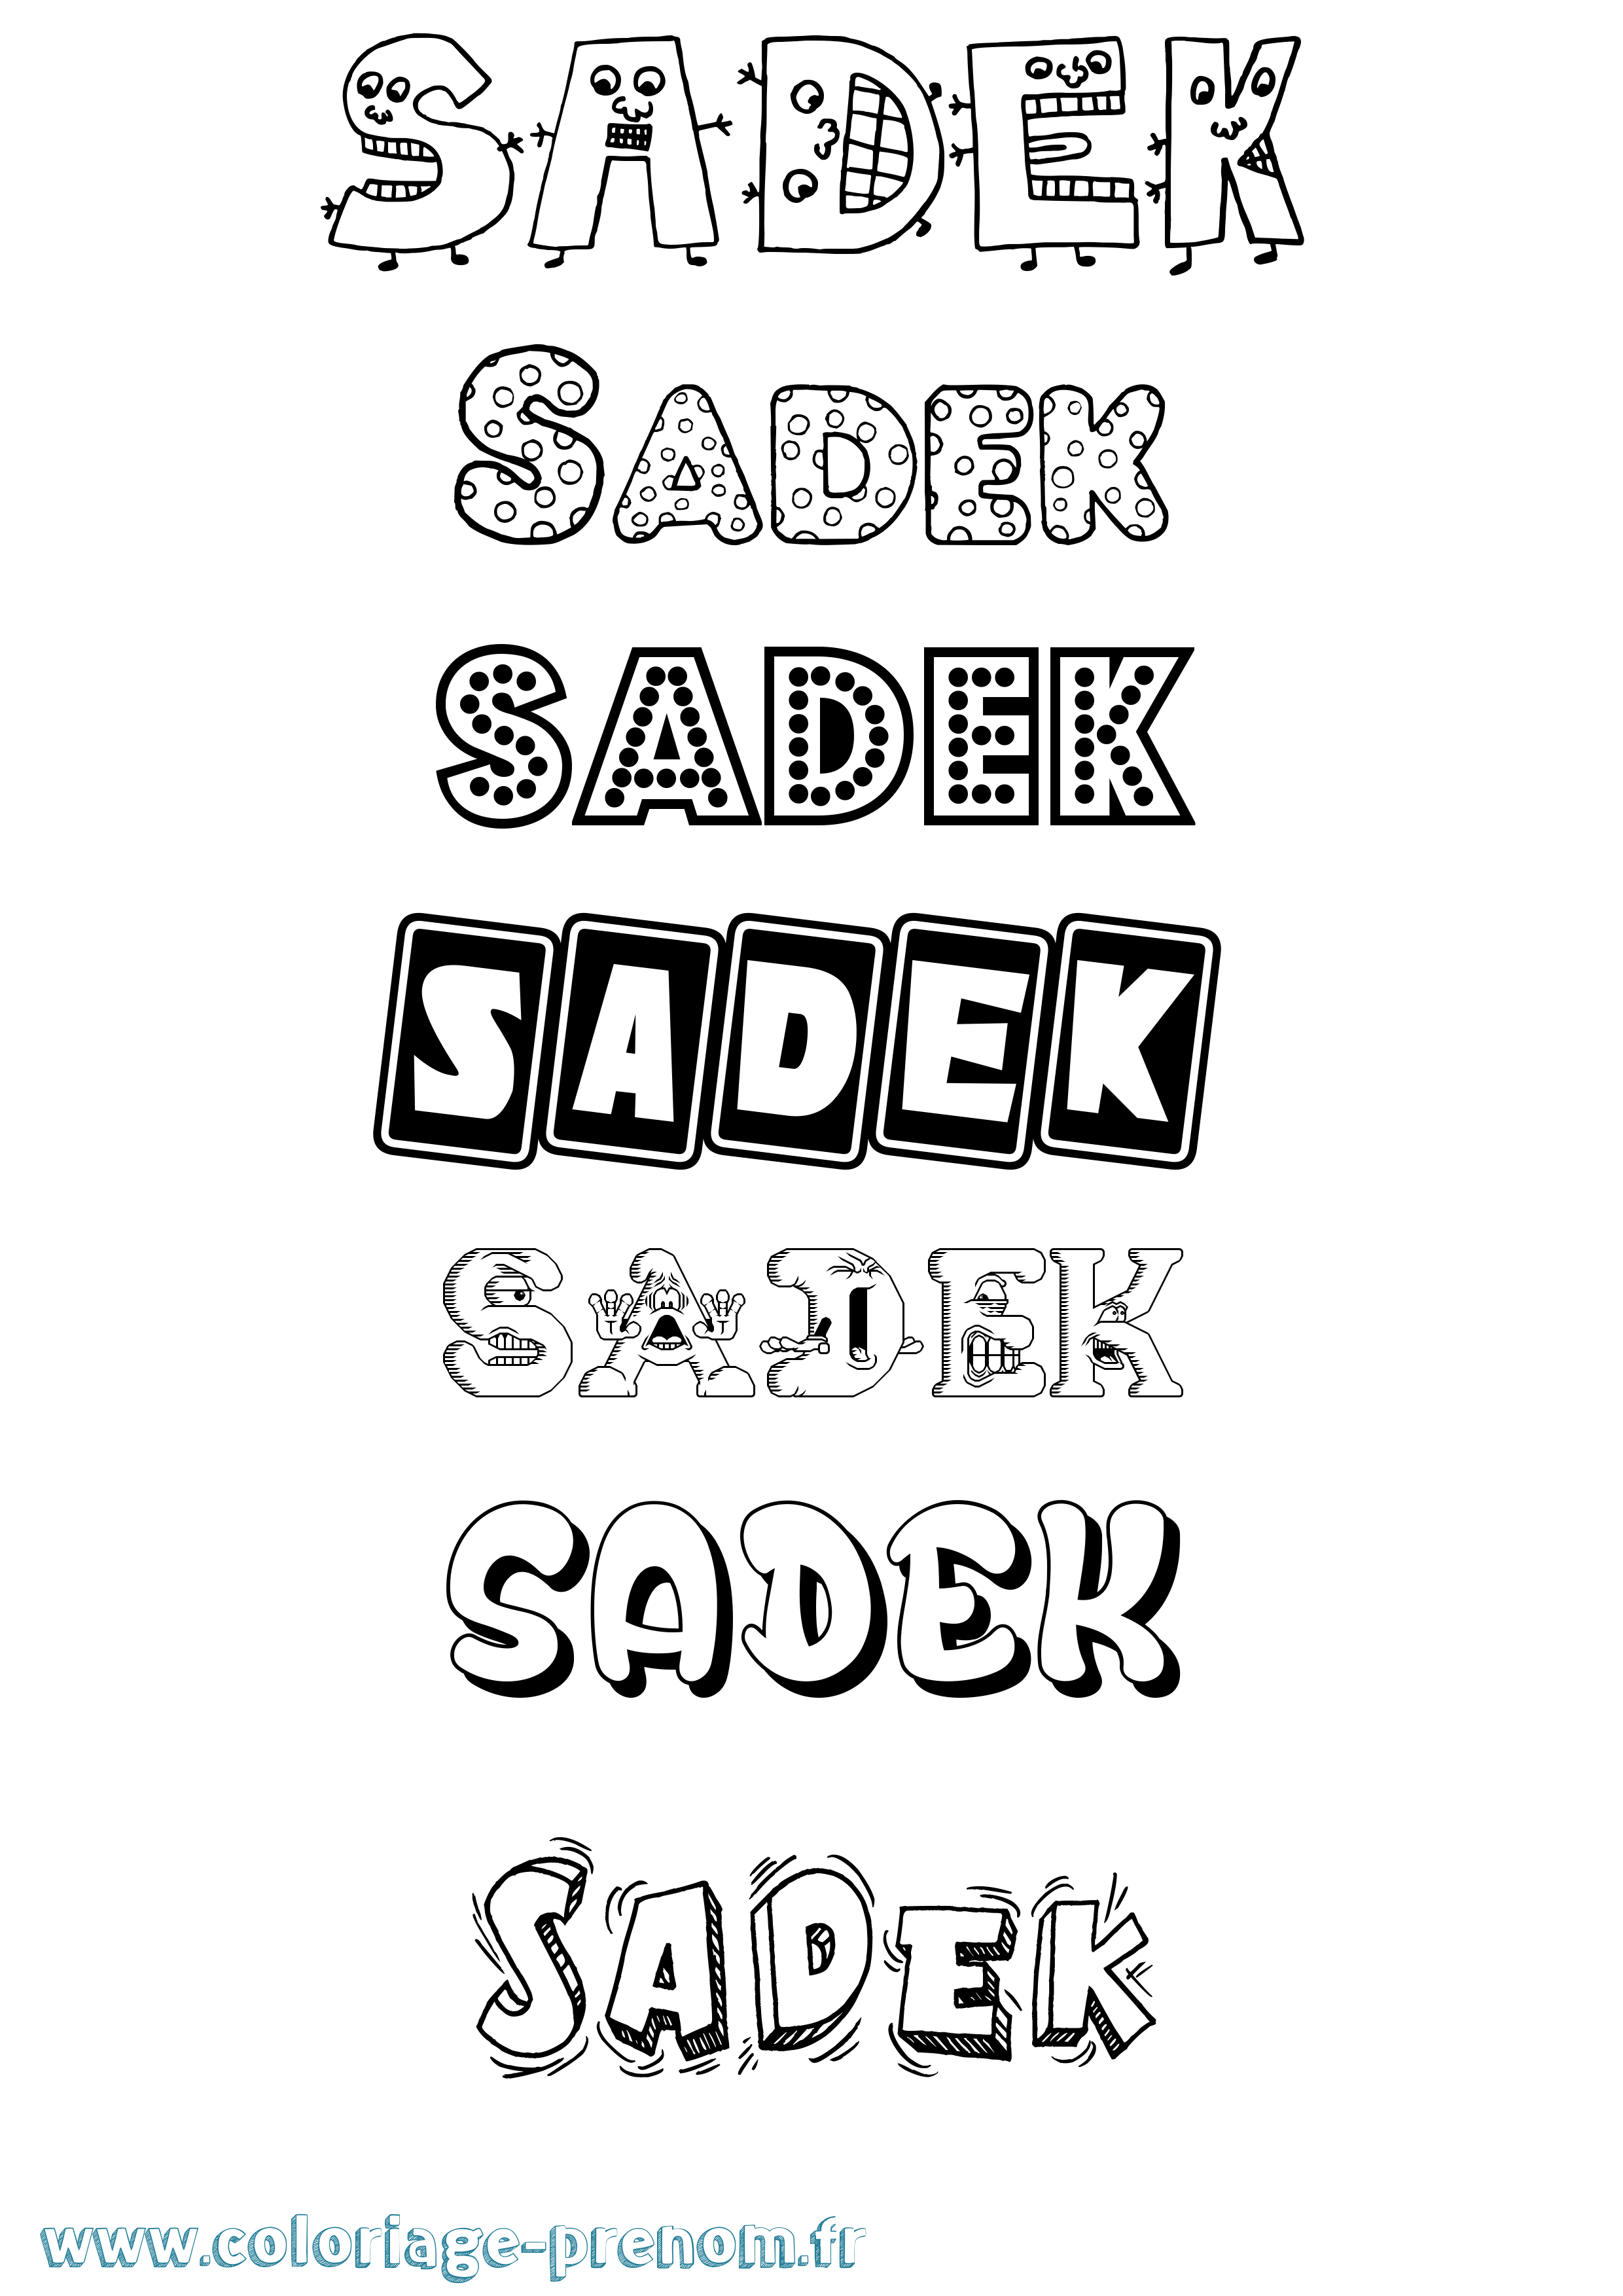 Coloriage prénom Sadek Fun